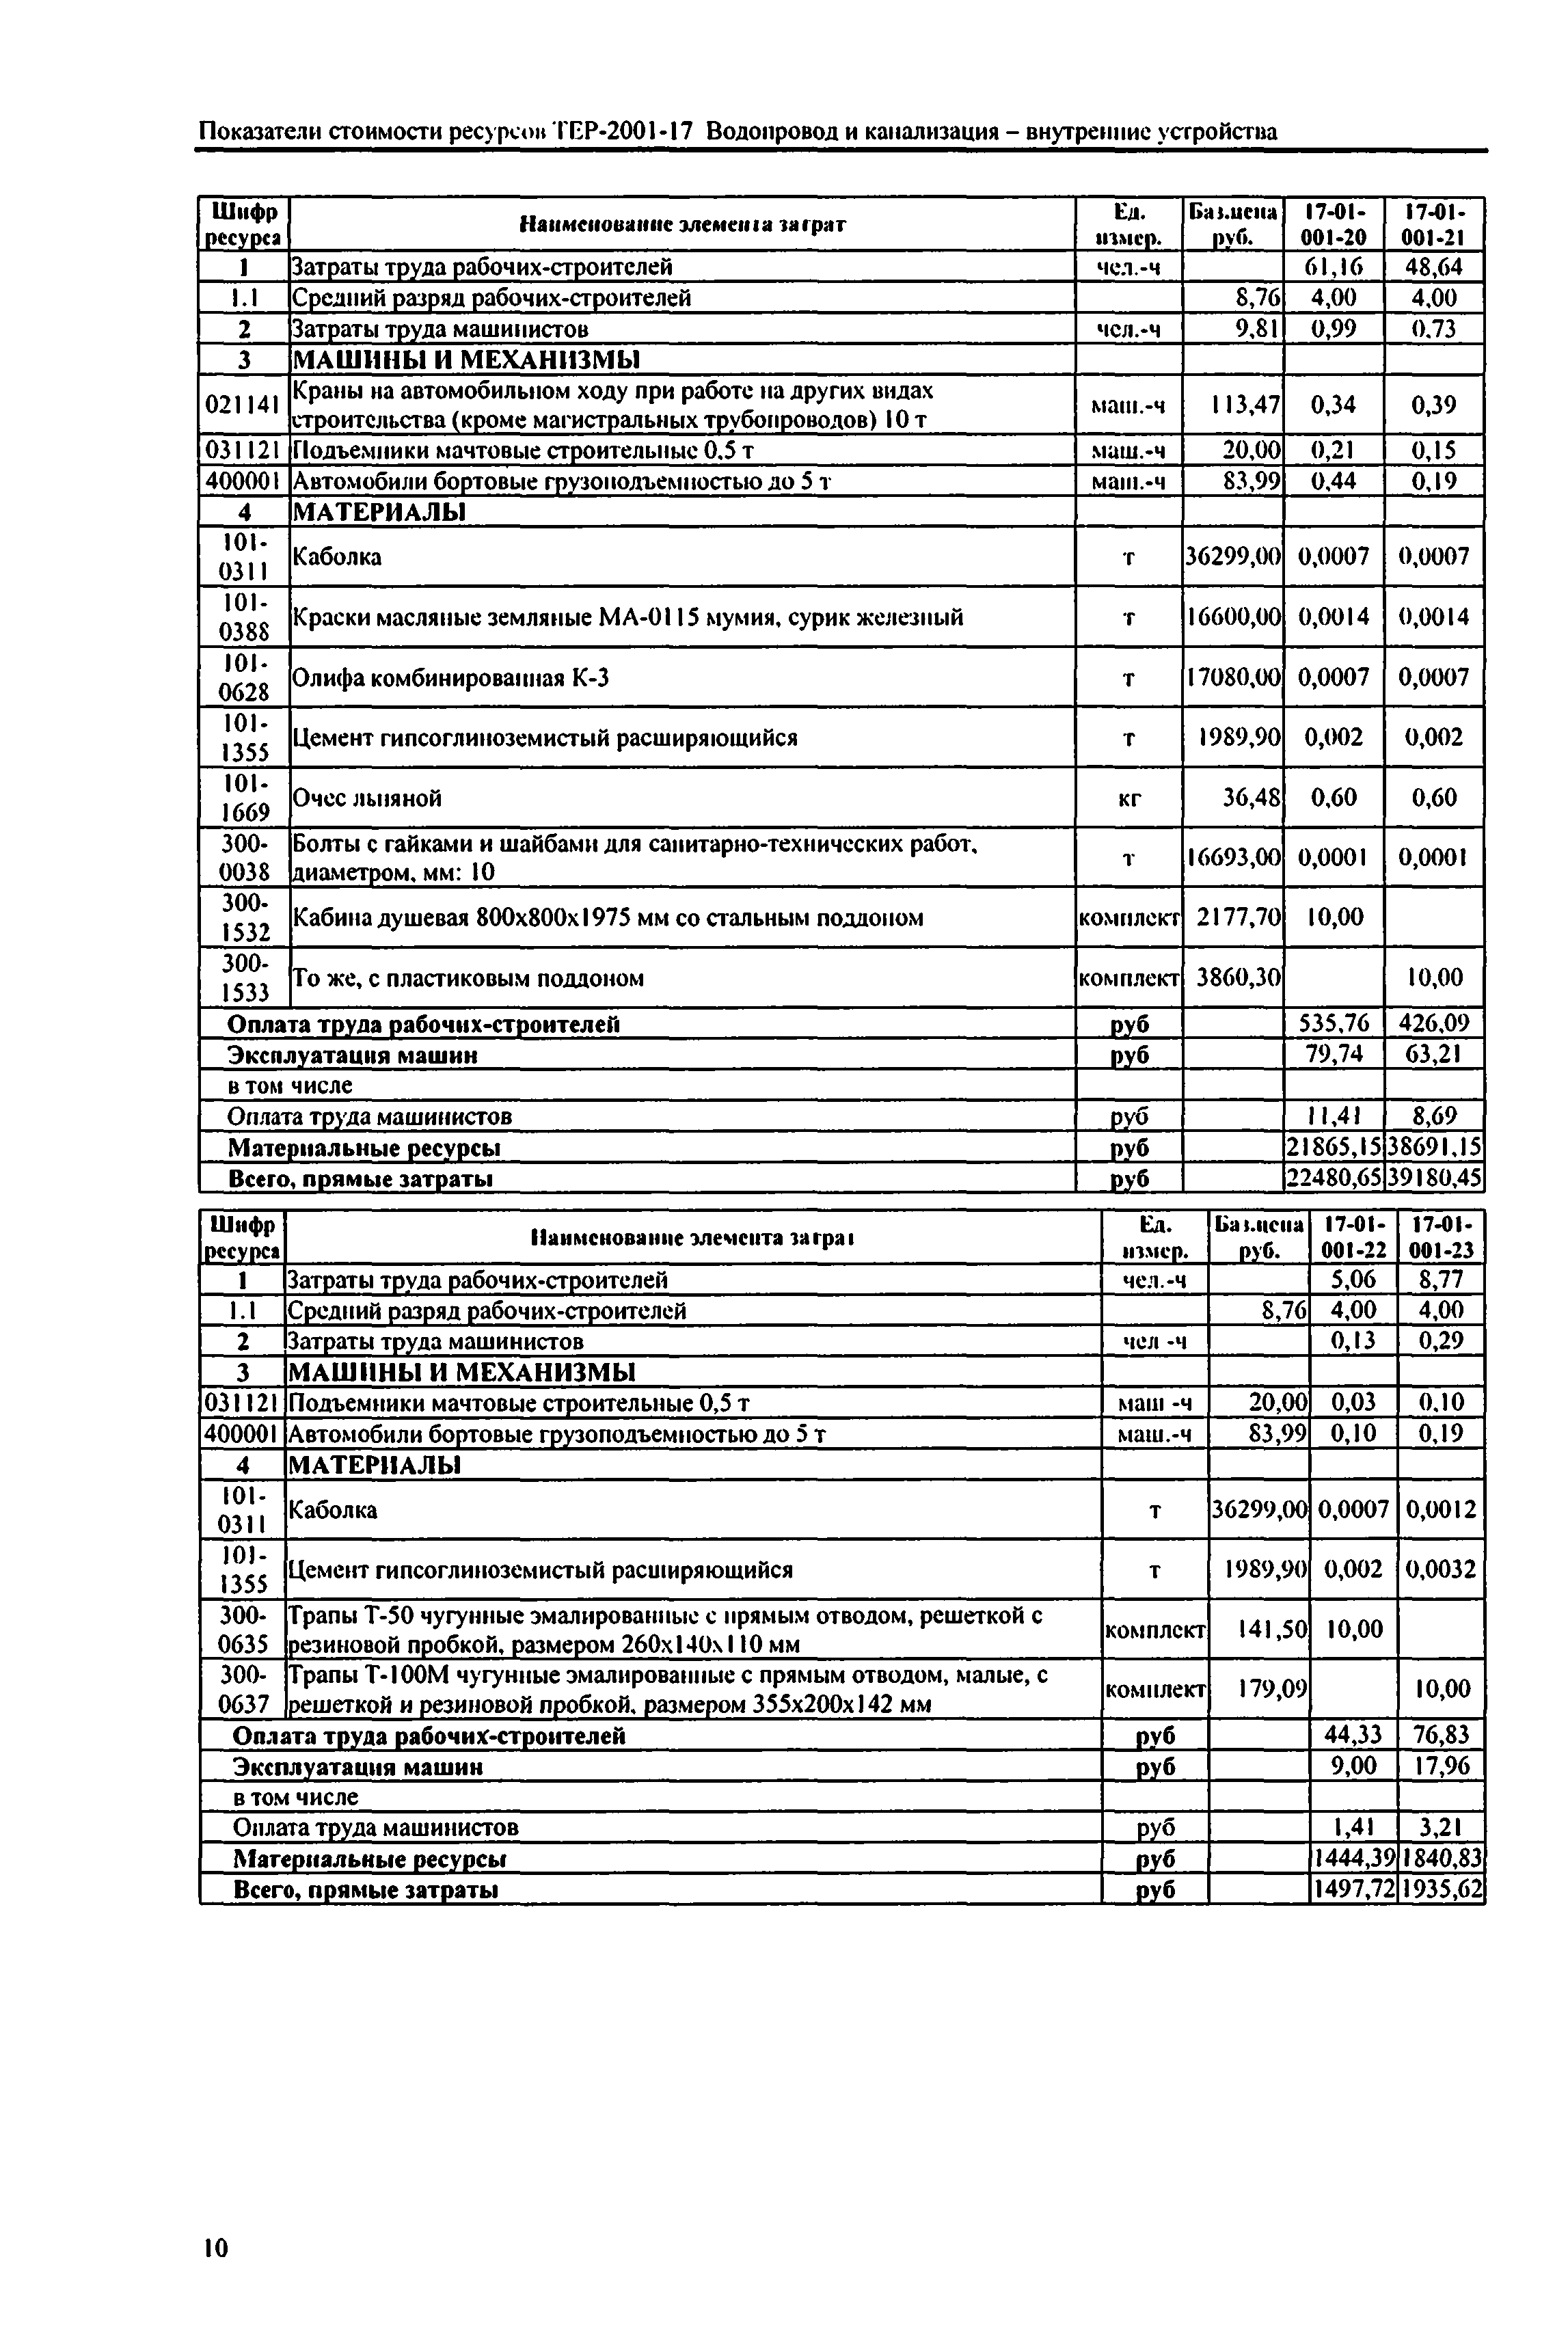 Справочное пособие к ТЕР 81-02-17-2001